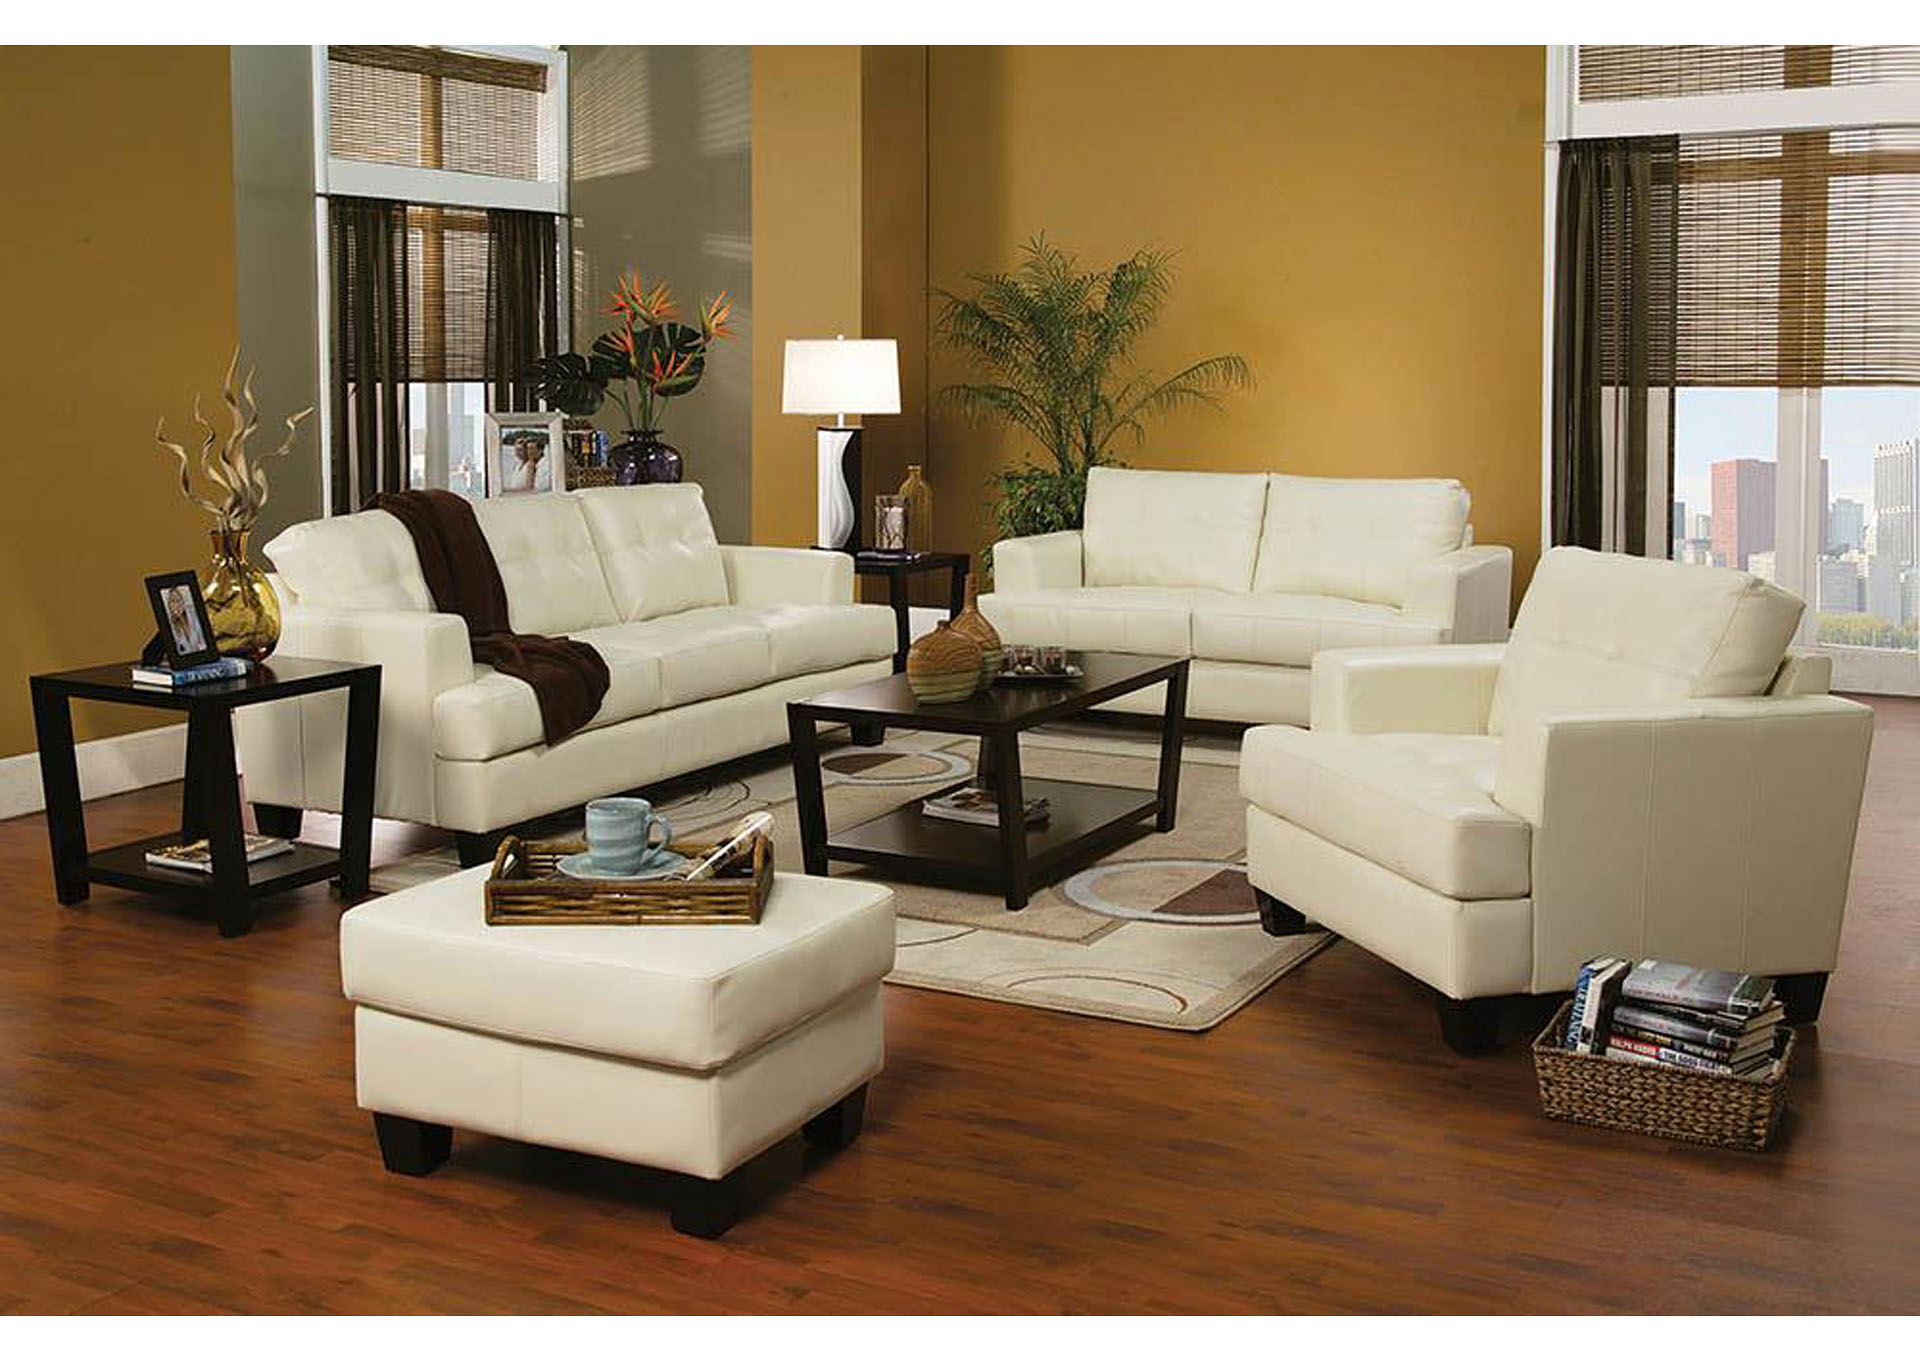 Samuel Cream Bonded Leather Sofa,ABF Coaster Furniture